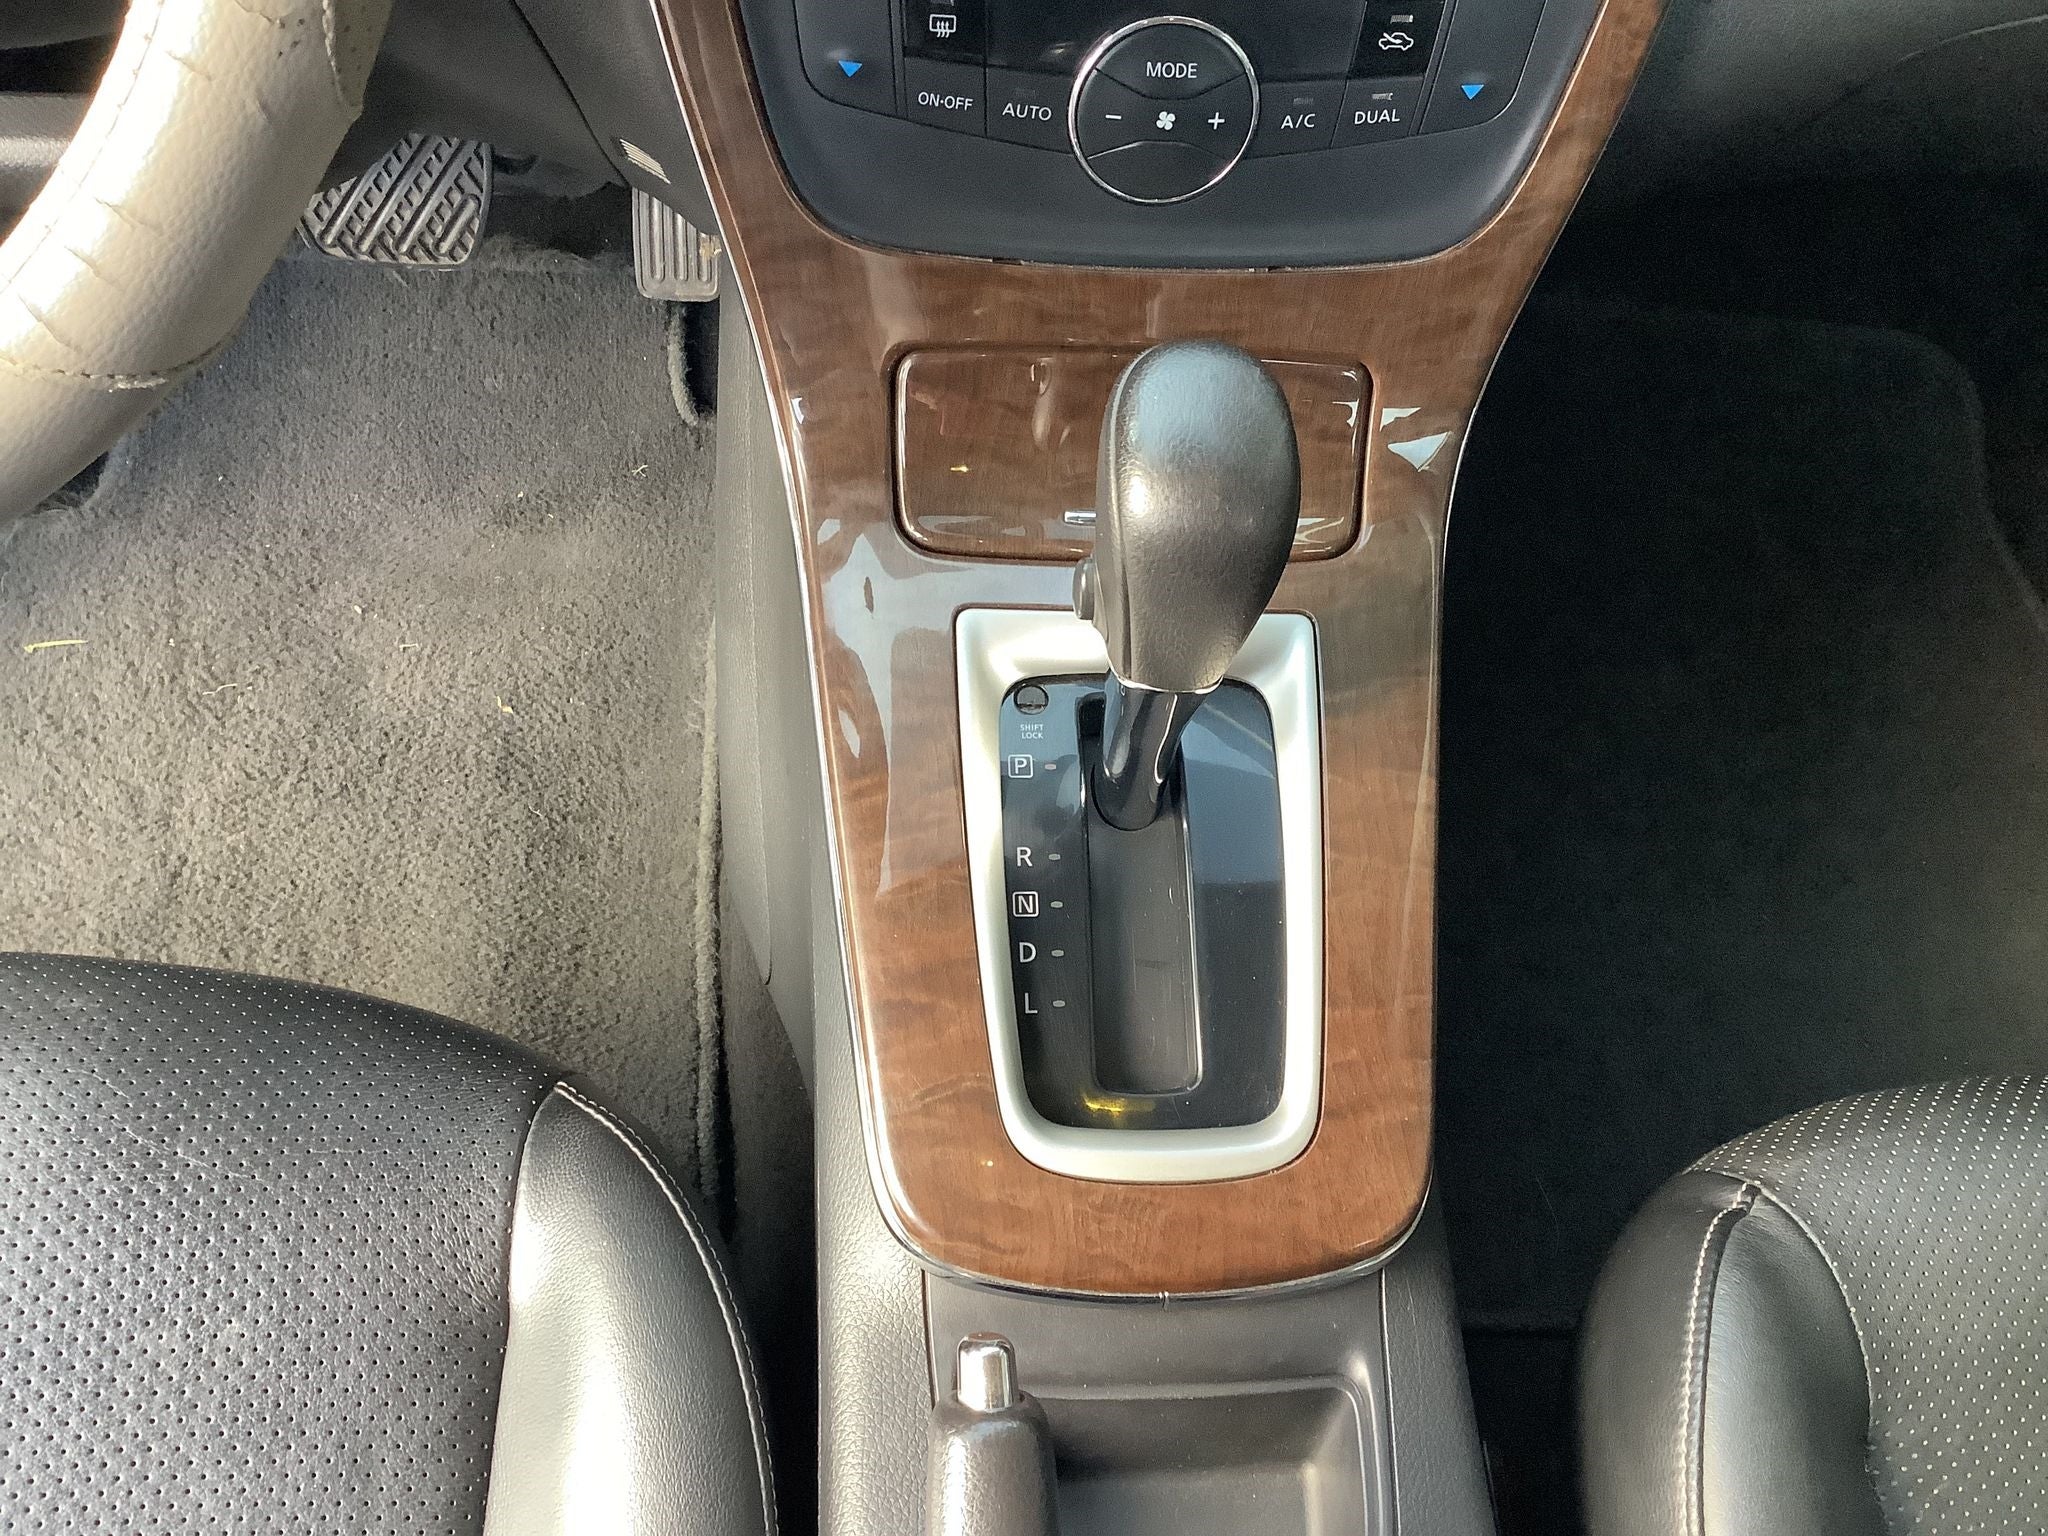 2016 Nissan Sentra 1.8 Exclusive Navi At